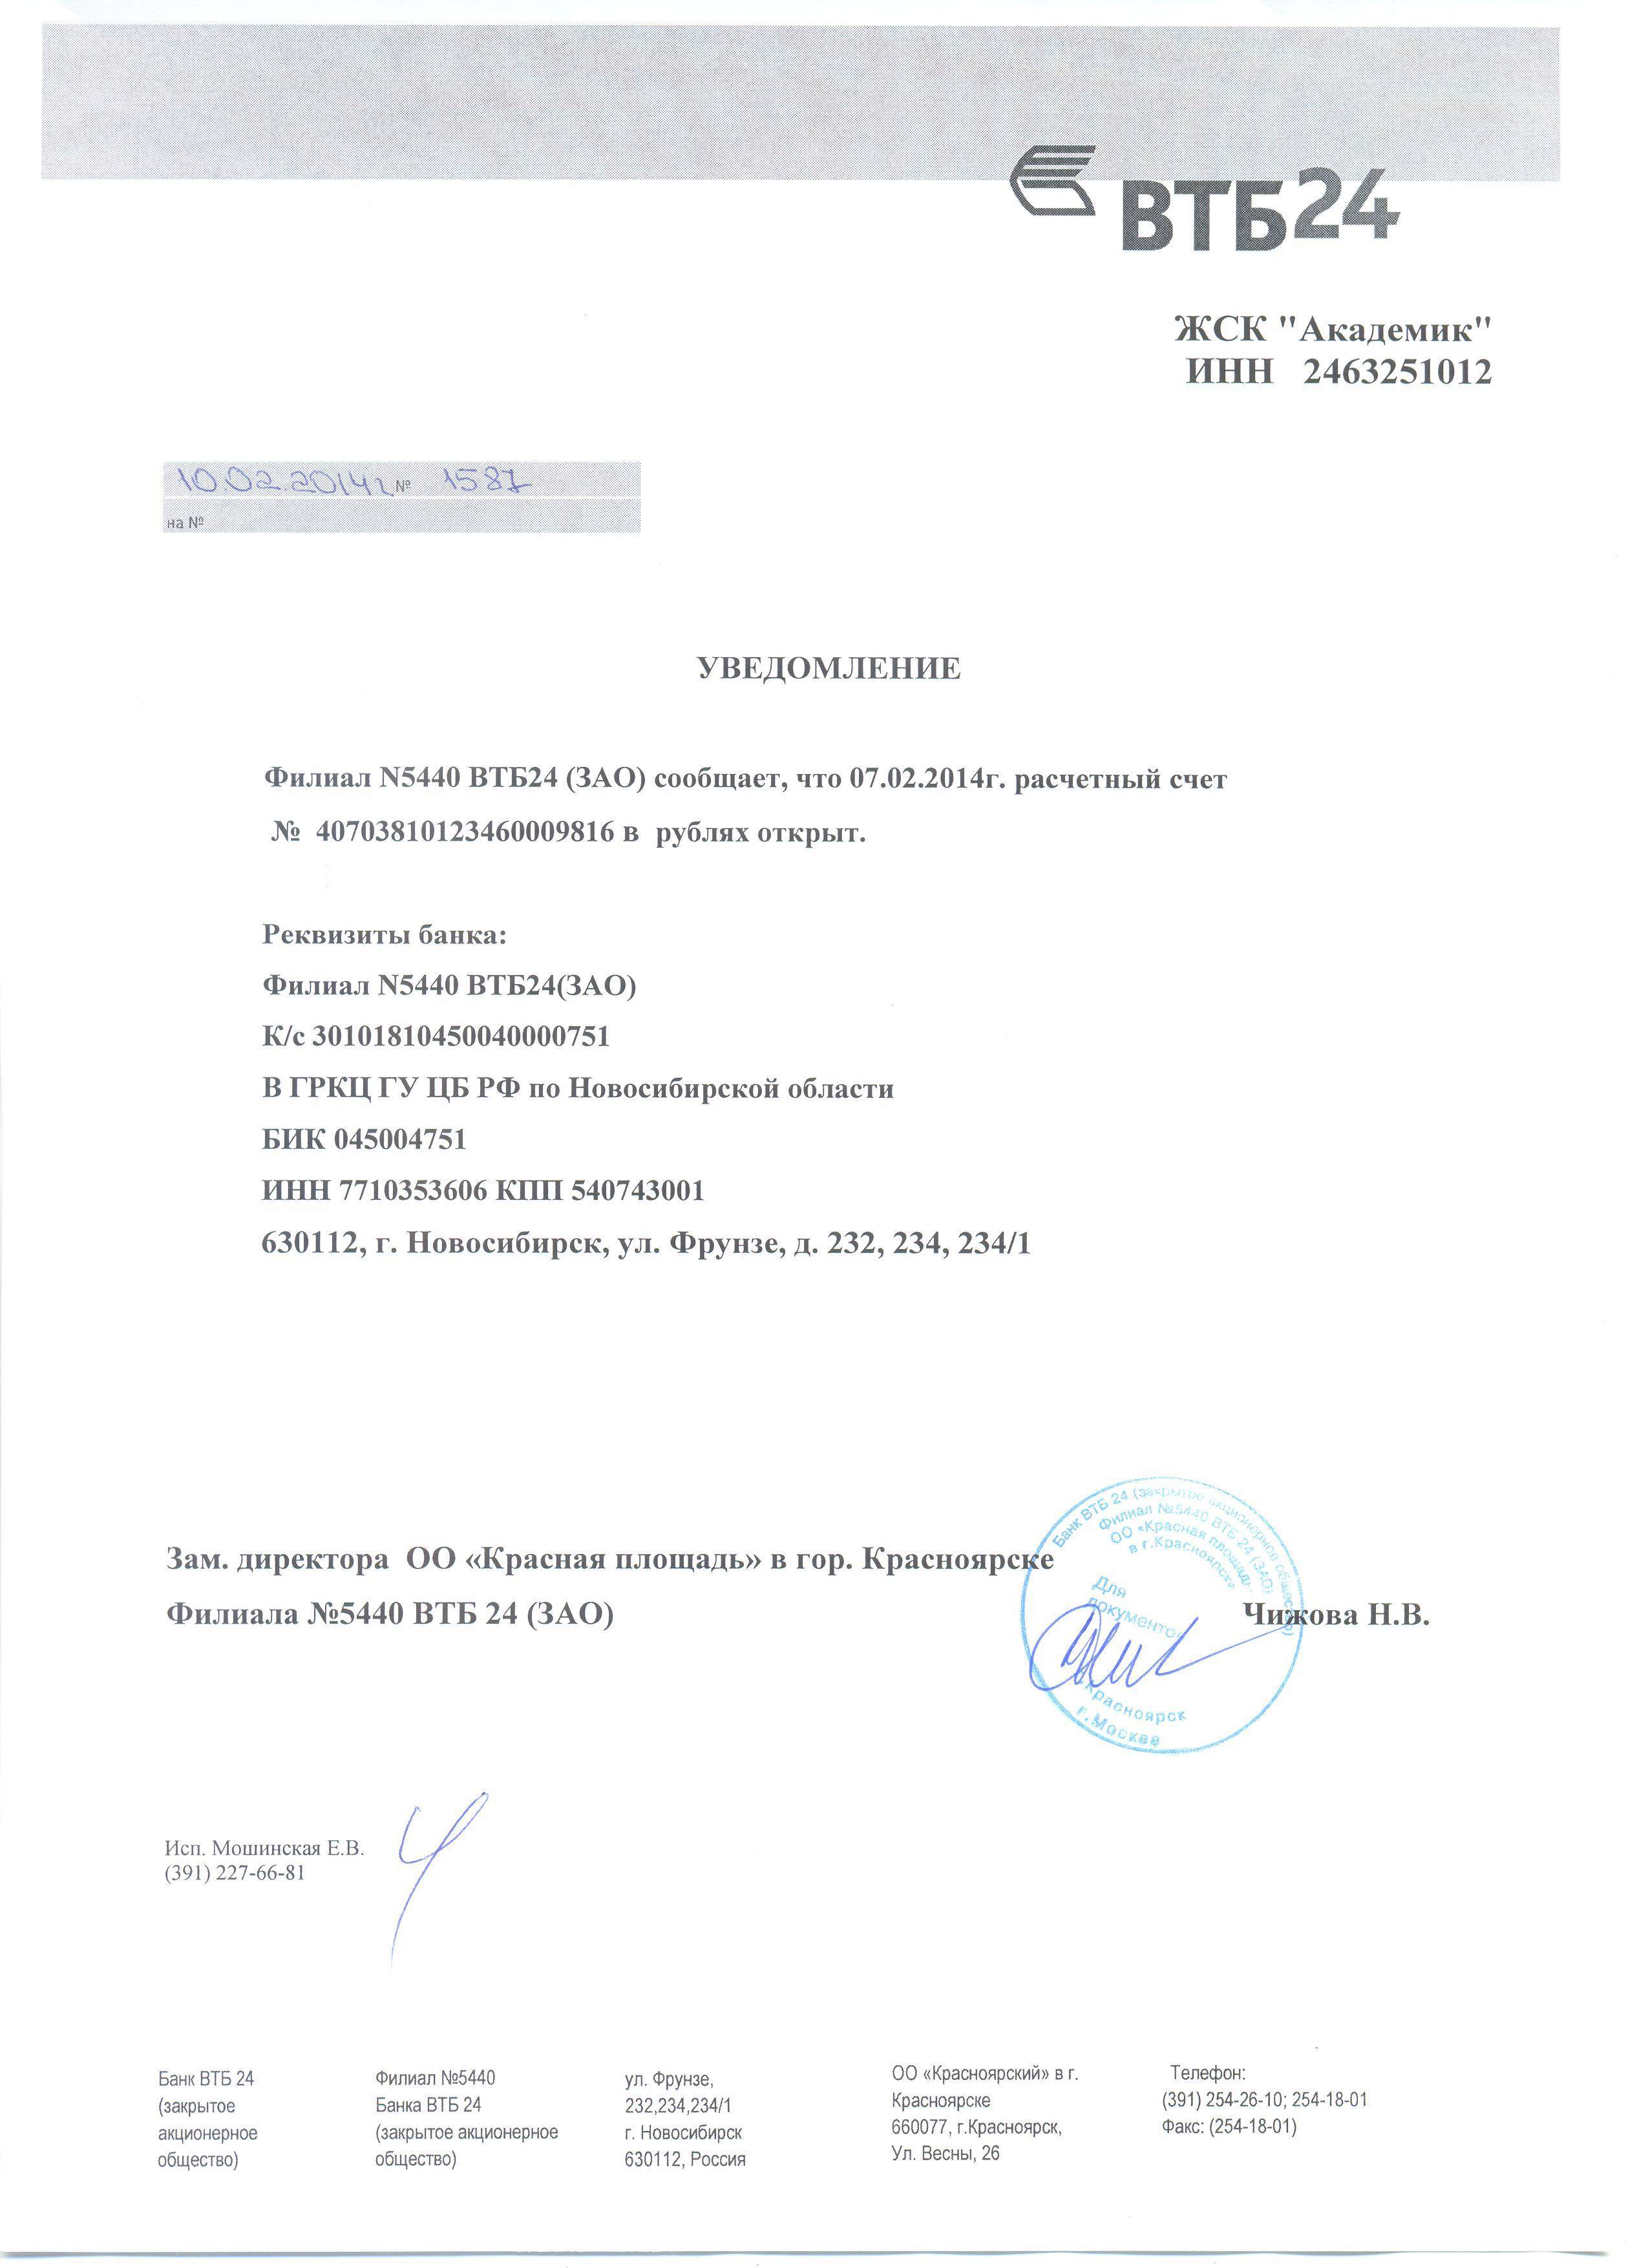 Уведомление об открытии расчетного счета. необходимые документы :: businessman.ru